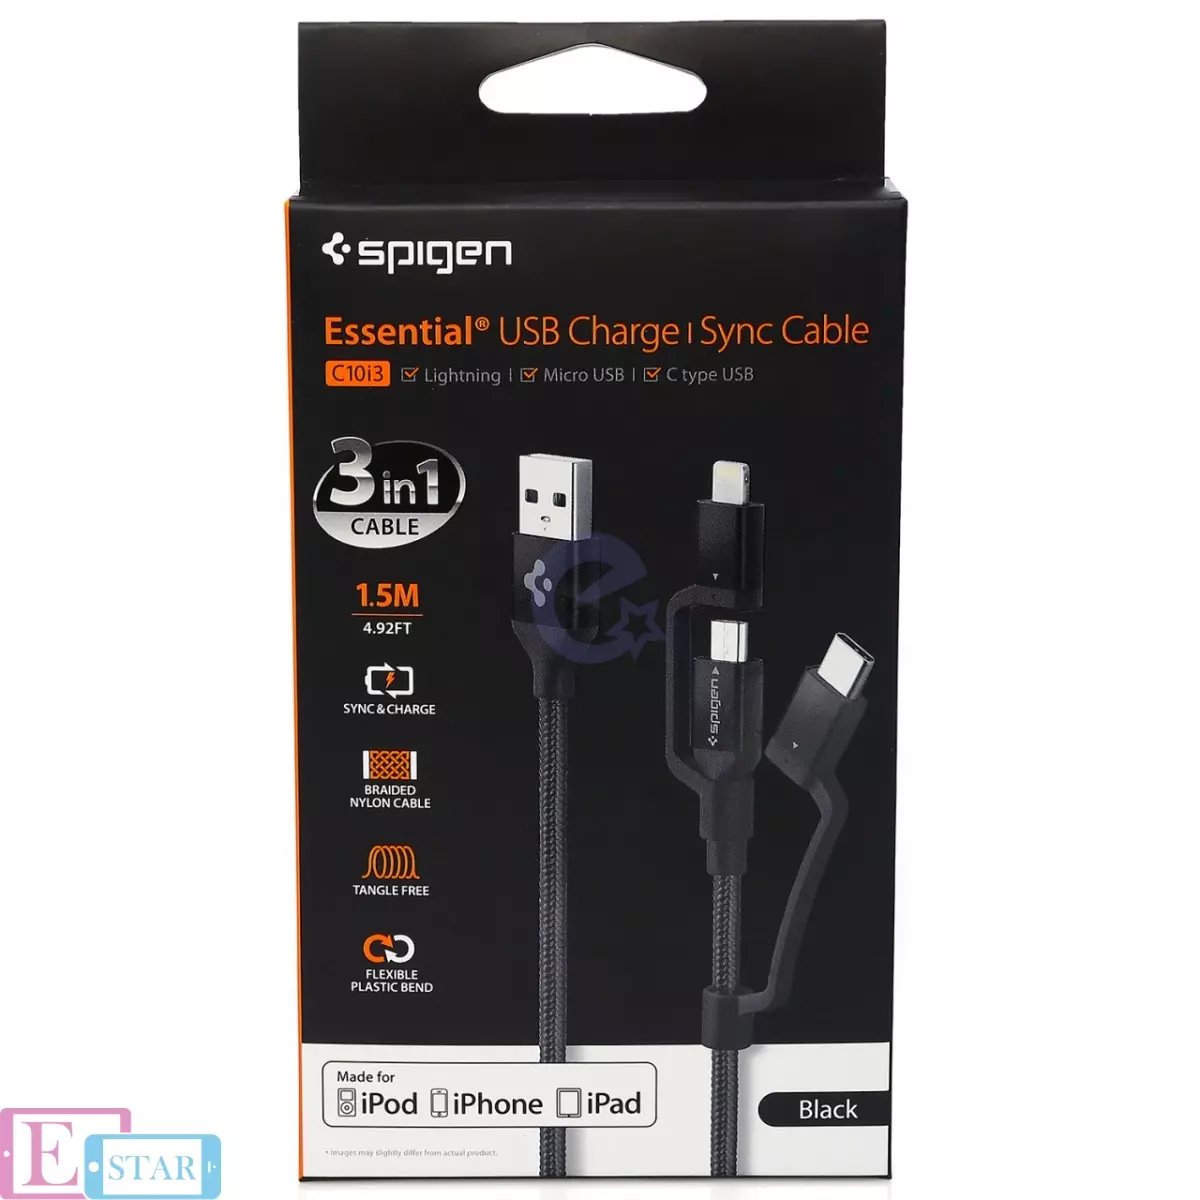 Кабель Spigen Essential C10i3 USB-C+Micro-B 5-pin+USB Lightning to USB 2.0 Cable Black (Черный) 000CB22774